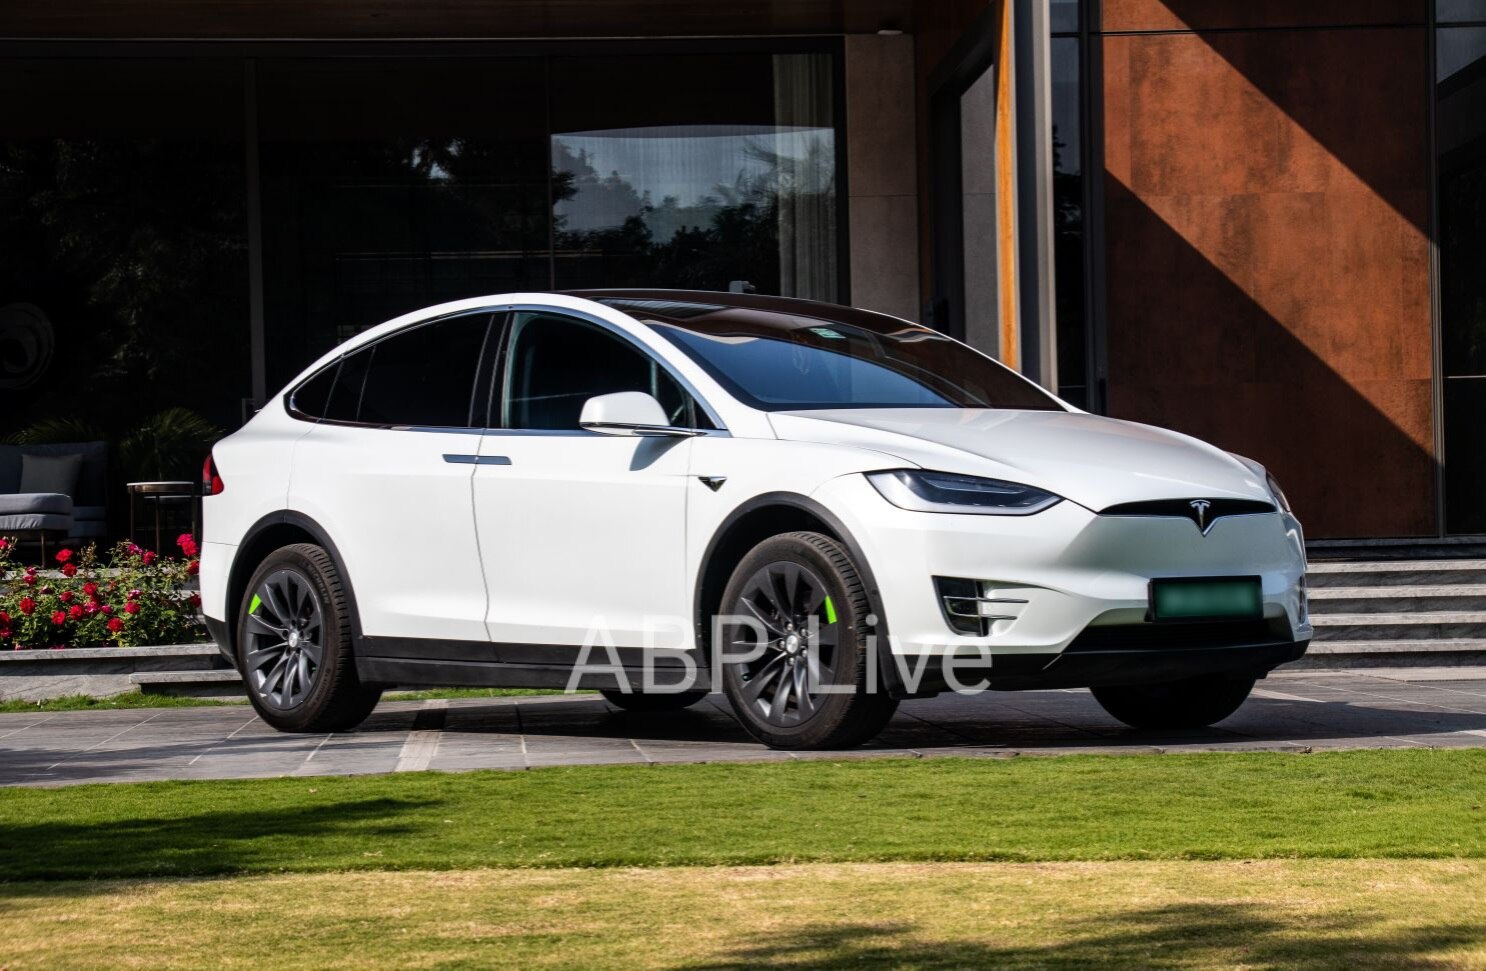 Tesla Model X Review: தீபாவளி டமாகா.. வியப்பில் ஆழ்த்தும் டெஸ்லா மாடல் எக்ஸ் கார்.. ஒரு பார்வை